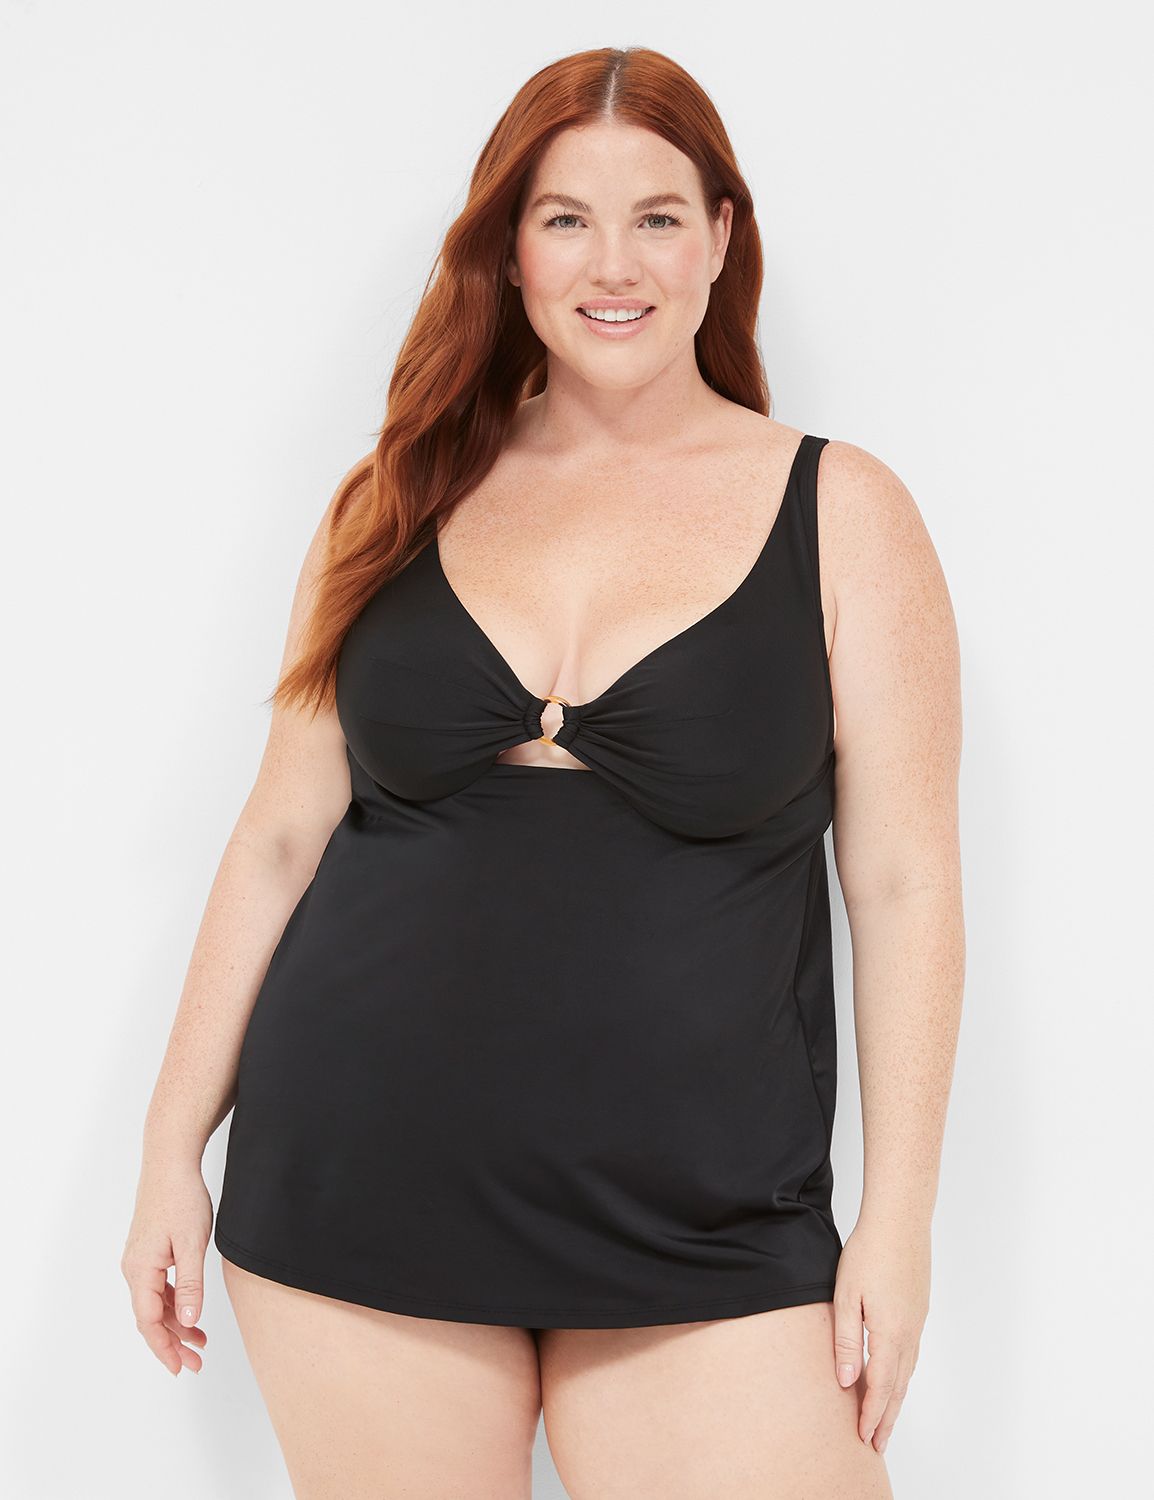 Ruffle Tankini Top Plus Size Set › oceanroadswimwear